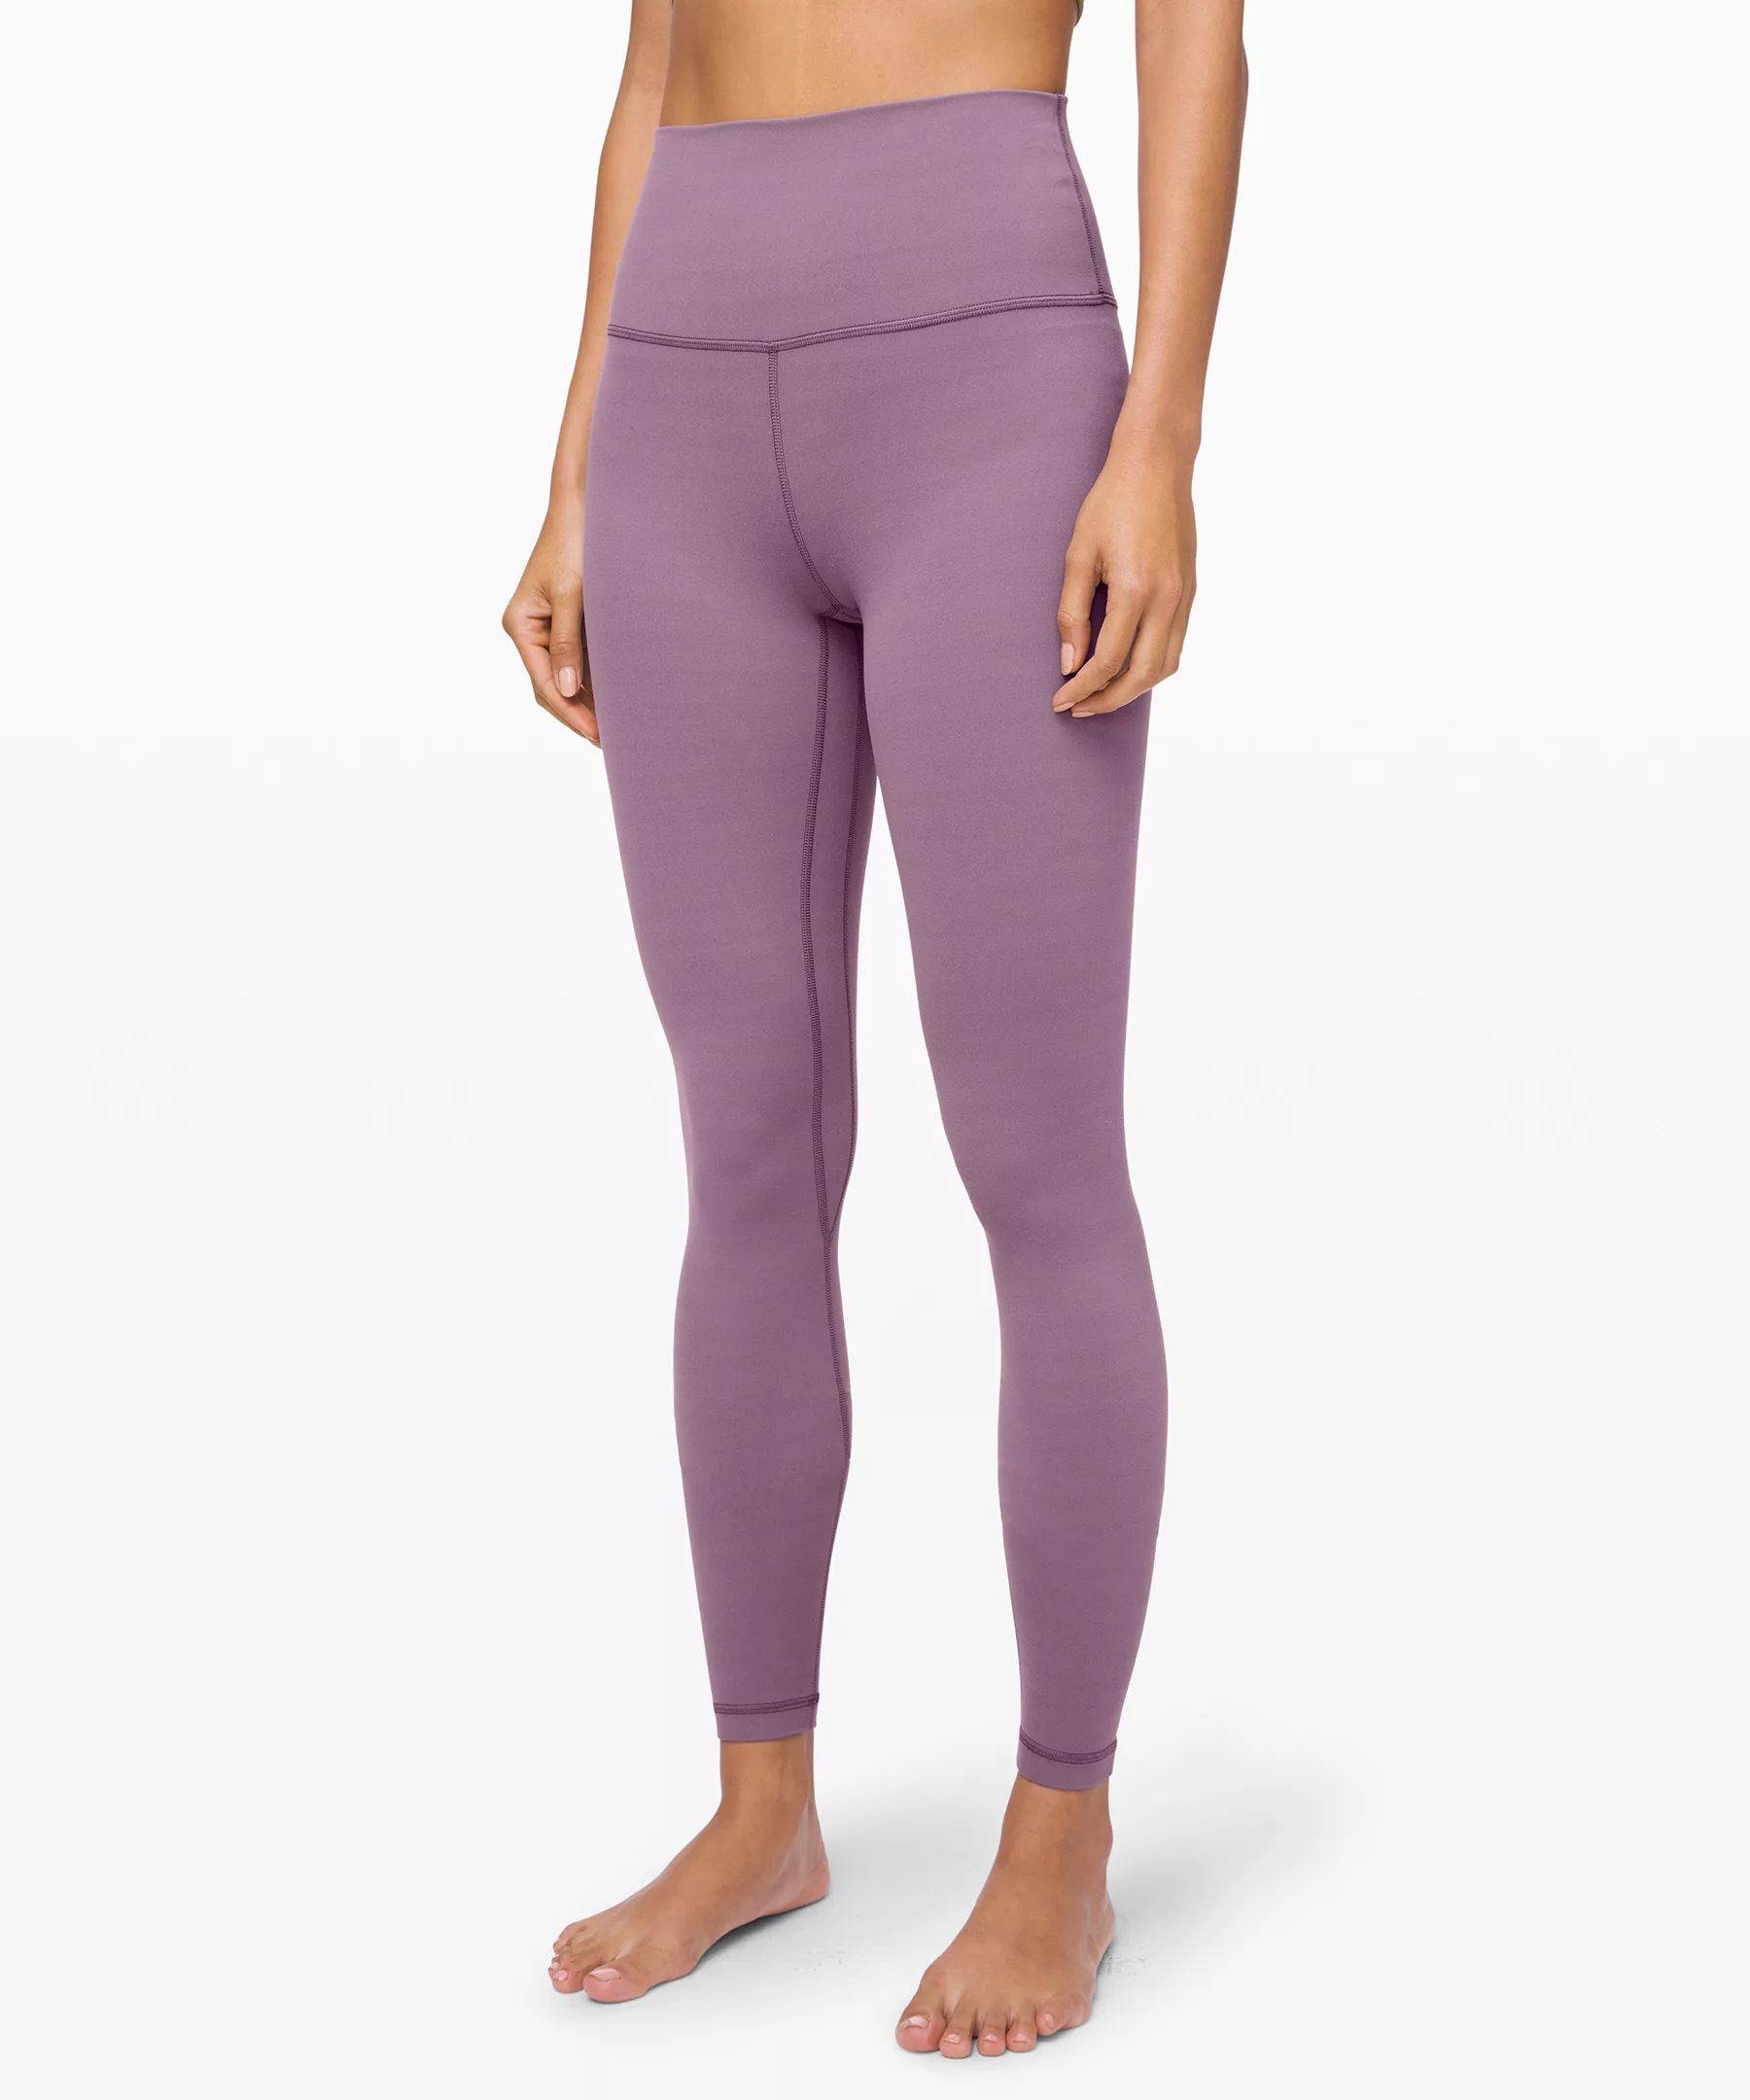 Align Pant 31" | Women's Pants | lululemon athletica | Lululemon (US)